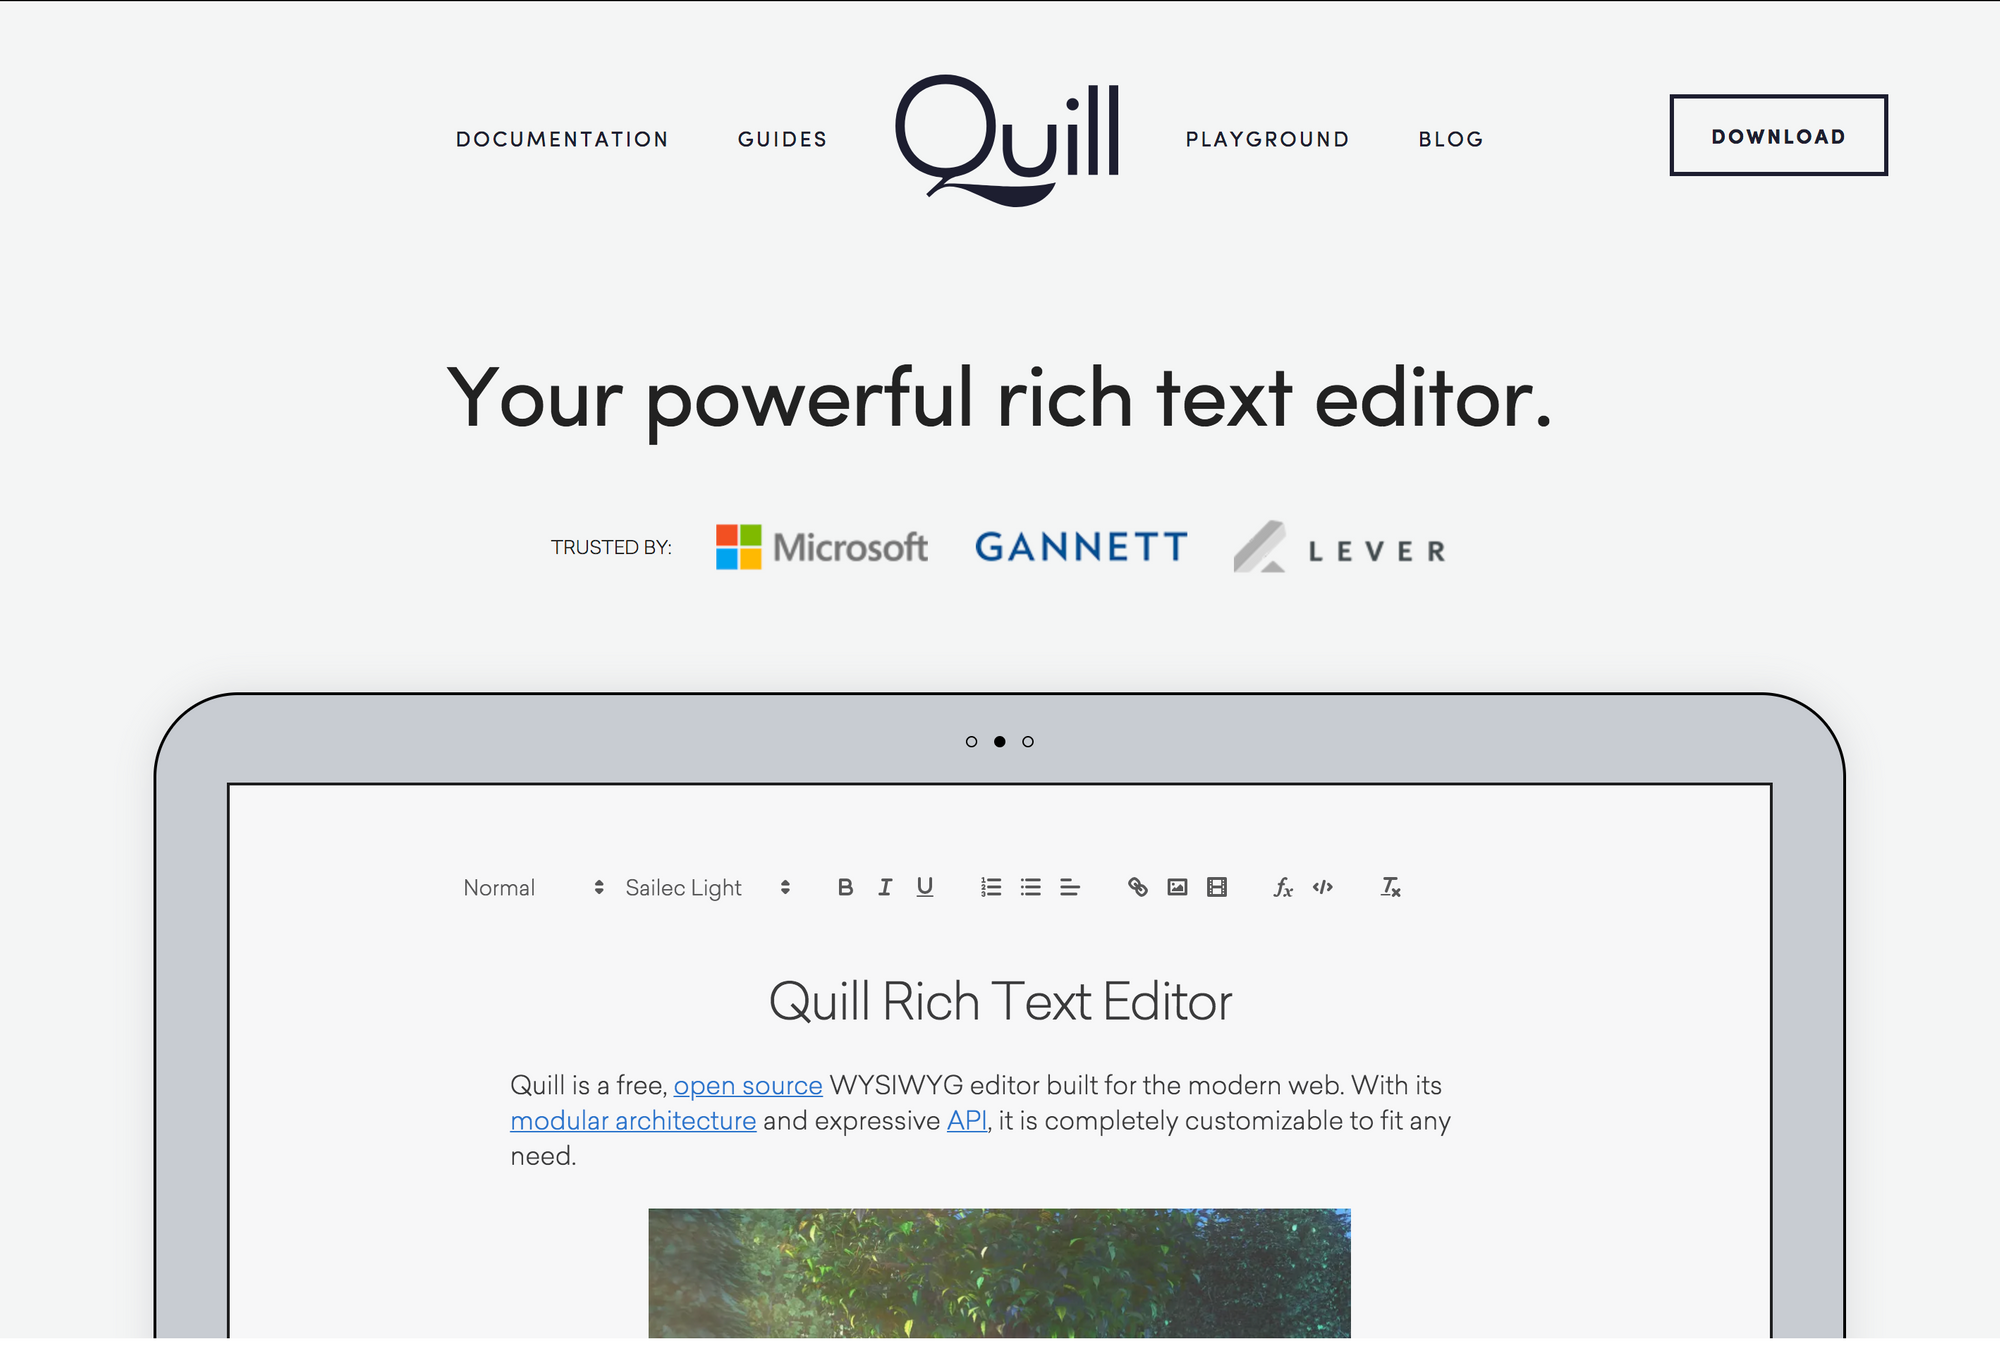 2018-8-3 接触 Quill 编辑器几小时的感受